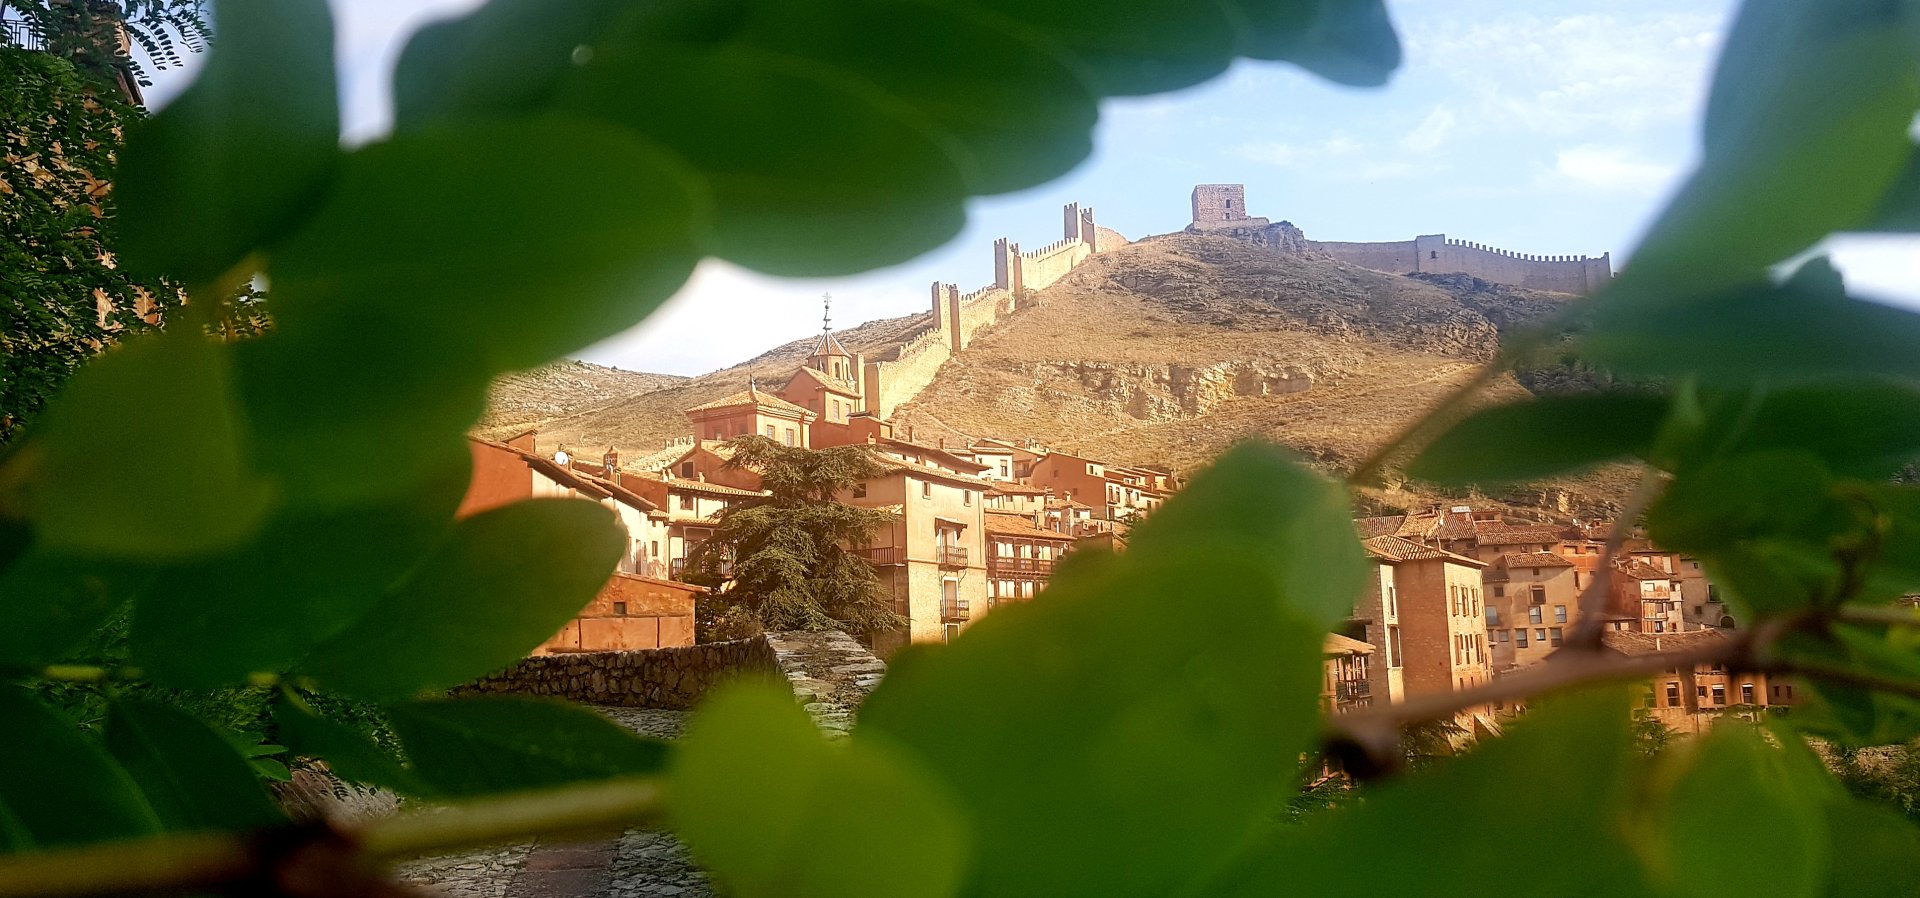 Sitios donde desconectar…#VisitaGuiada en #Albarracín…#SienteLaExperiencia de #20AñosContigo